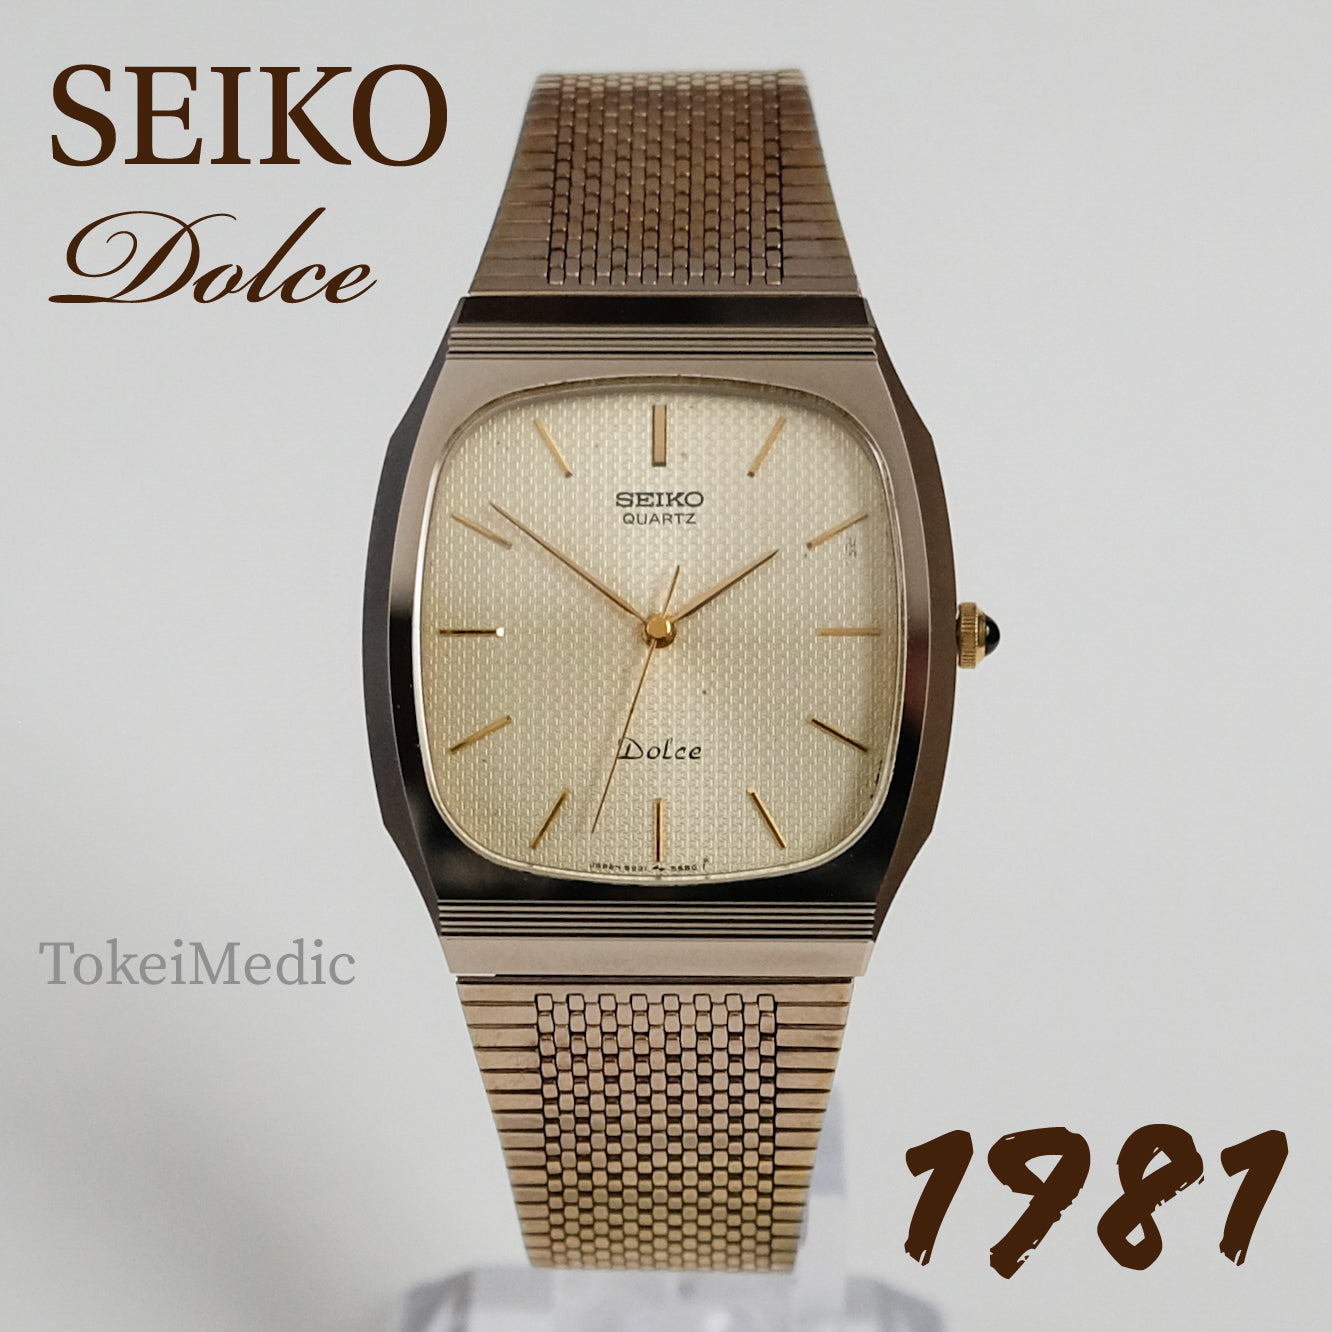 1981 Seiko Dolce 5931-5450 – TokeiMedic